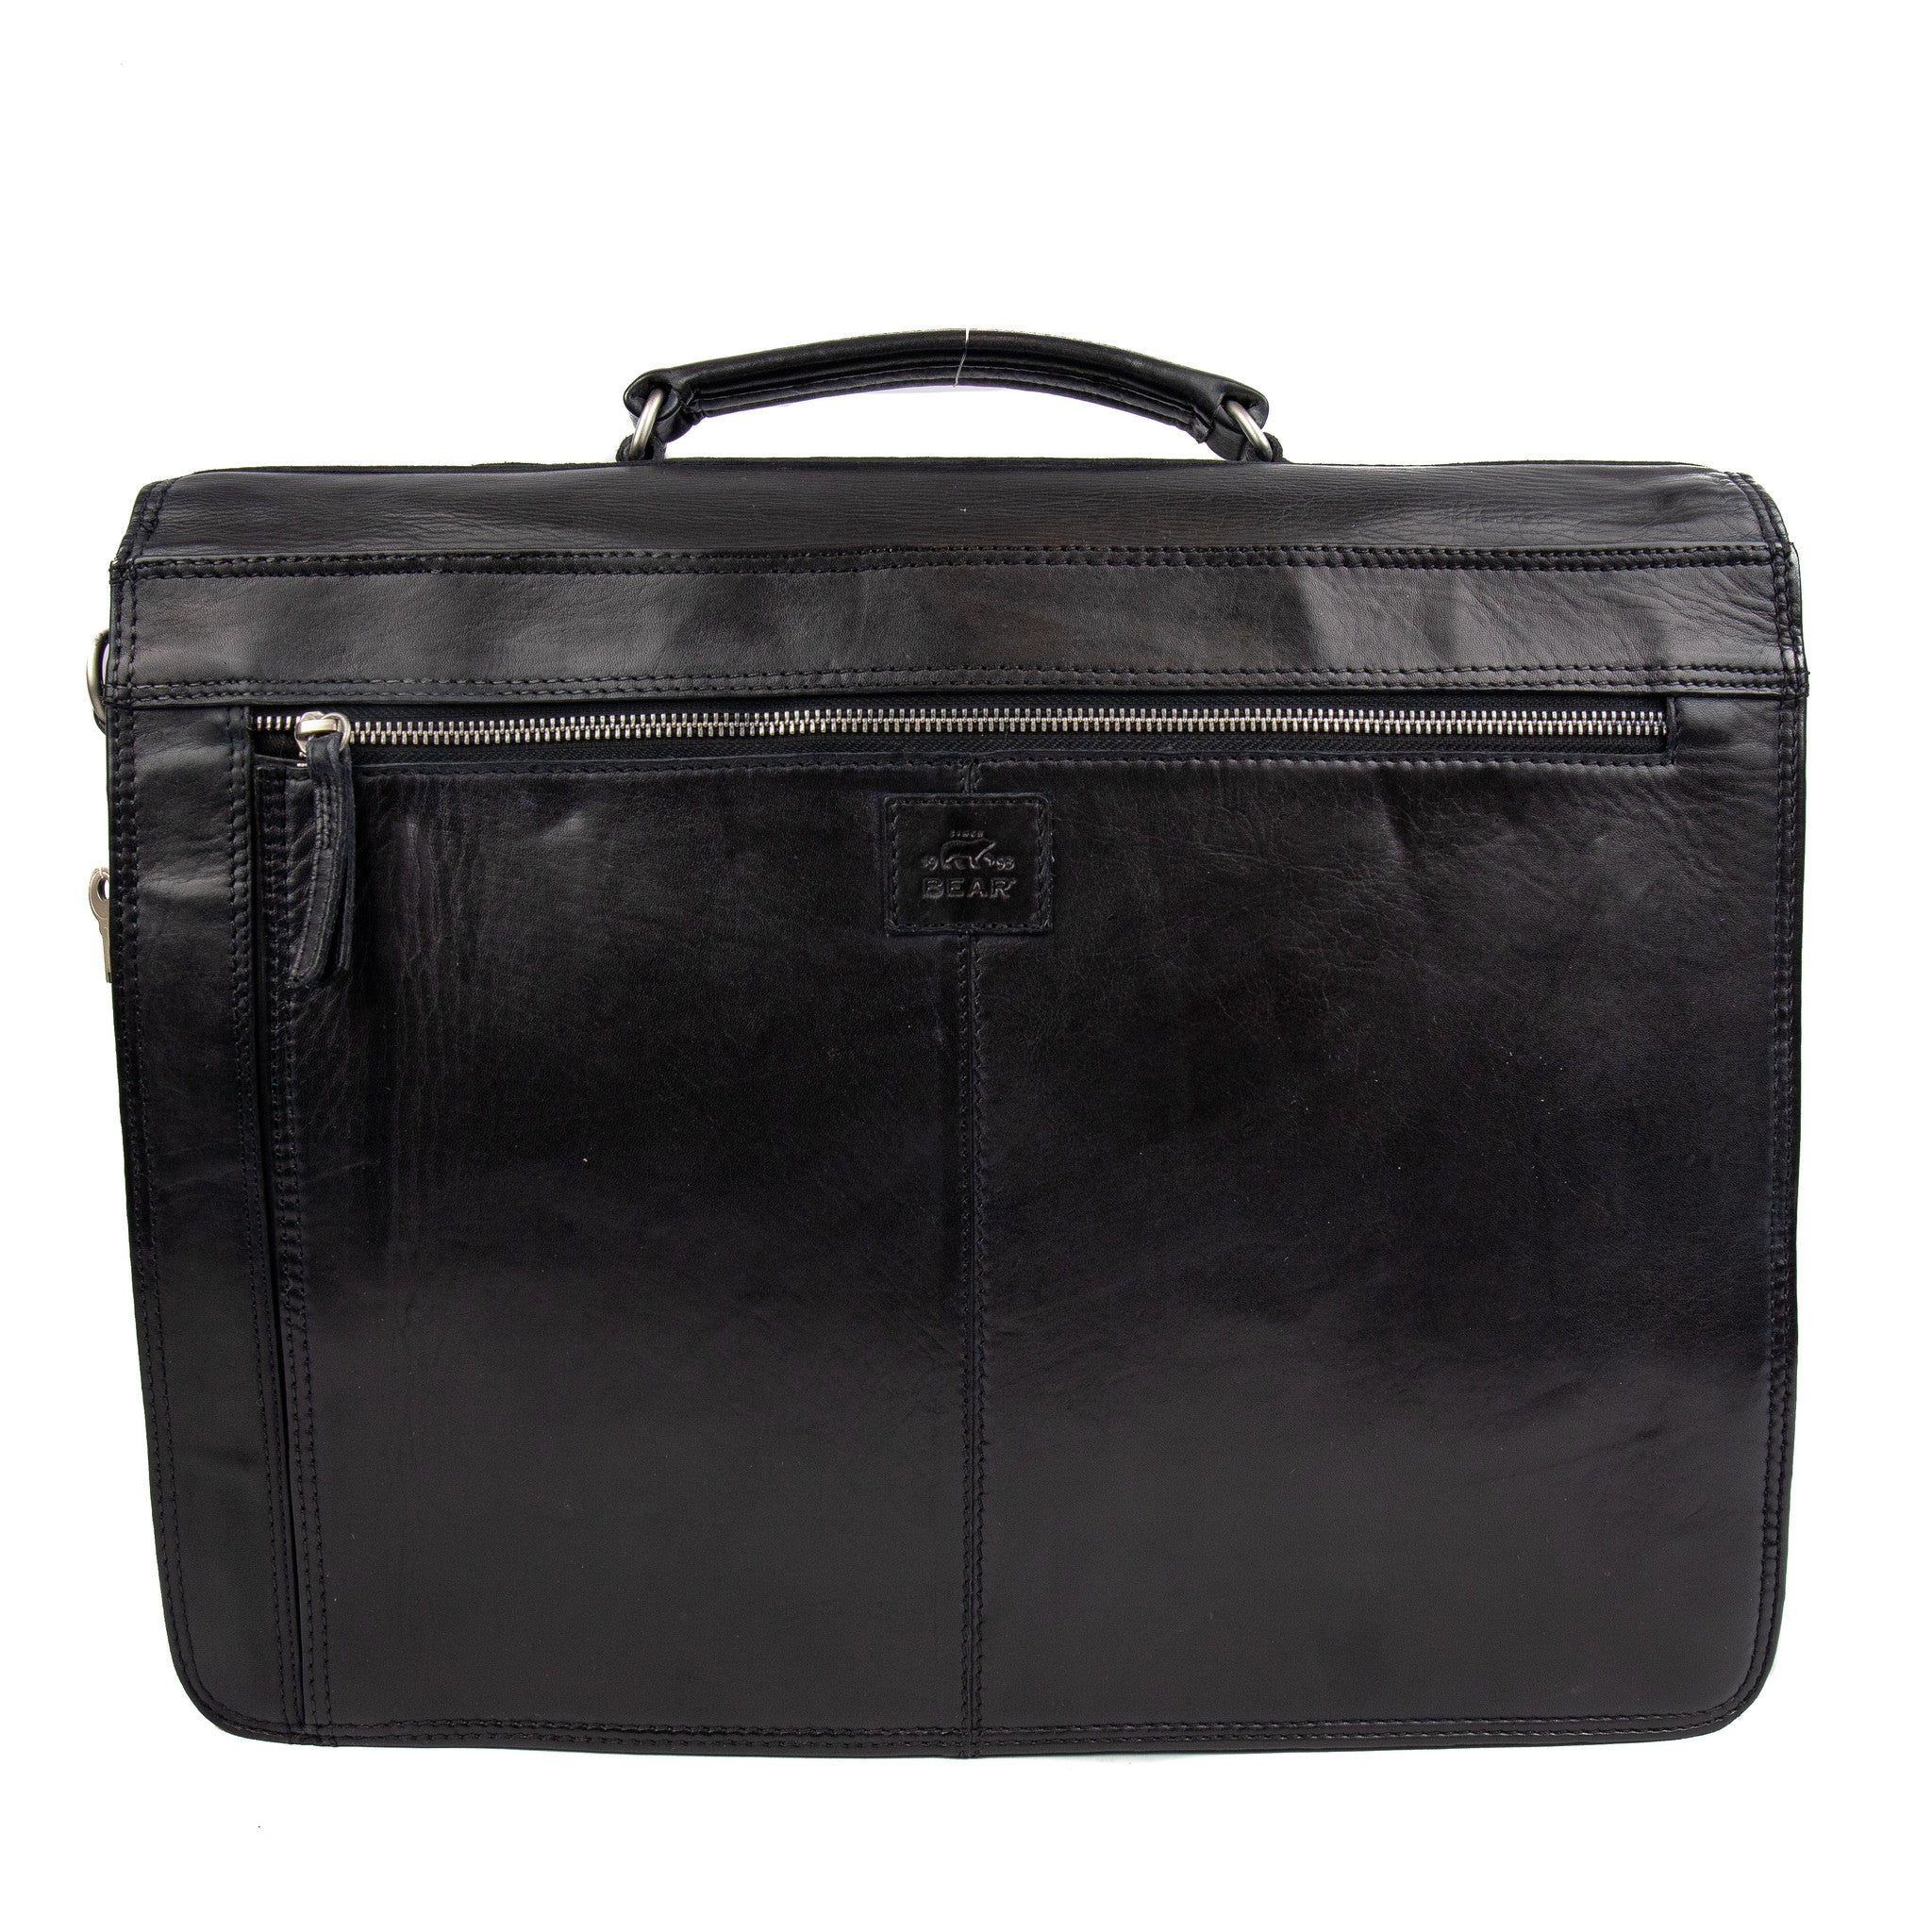 Briefcase 'Willem-jan' black